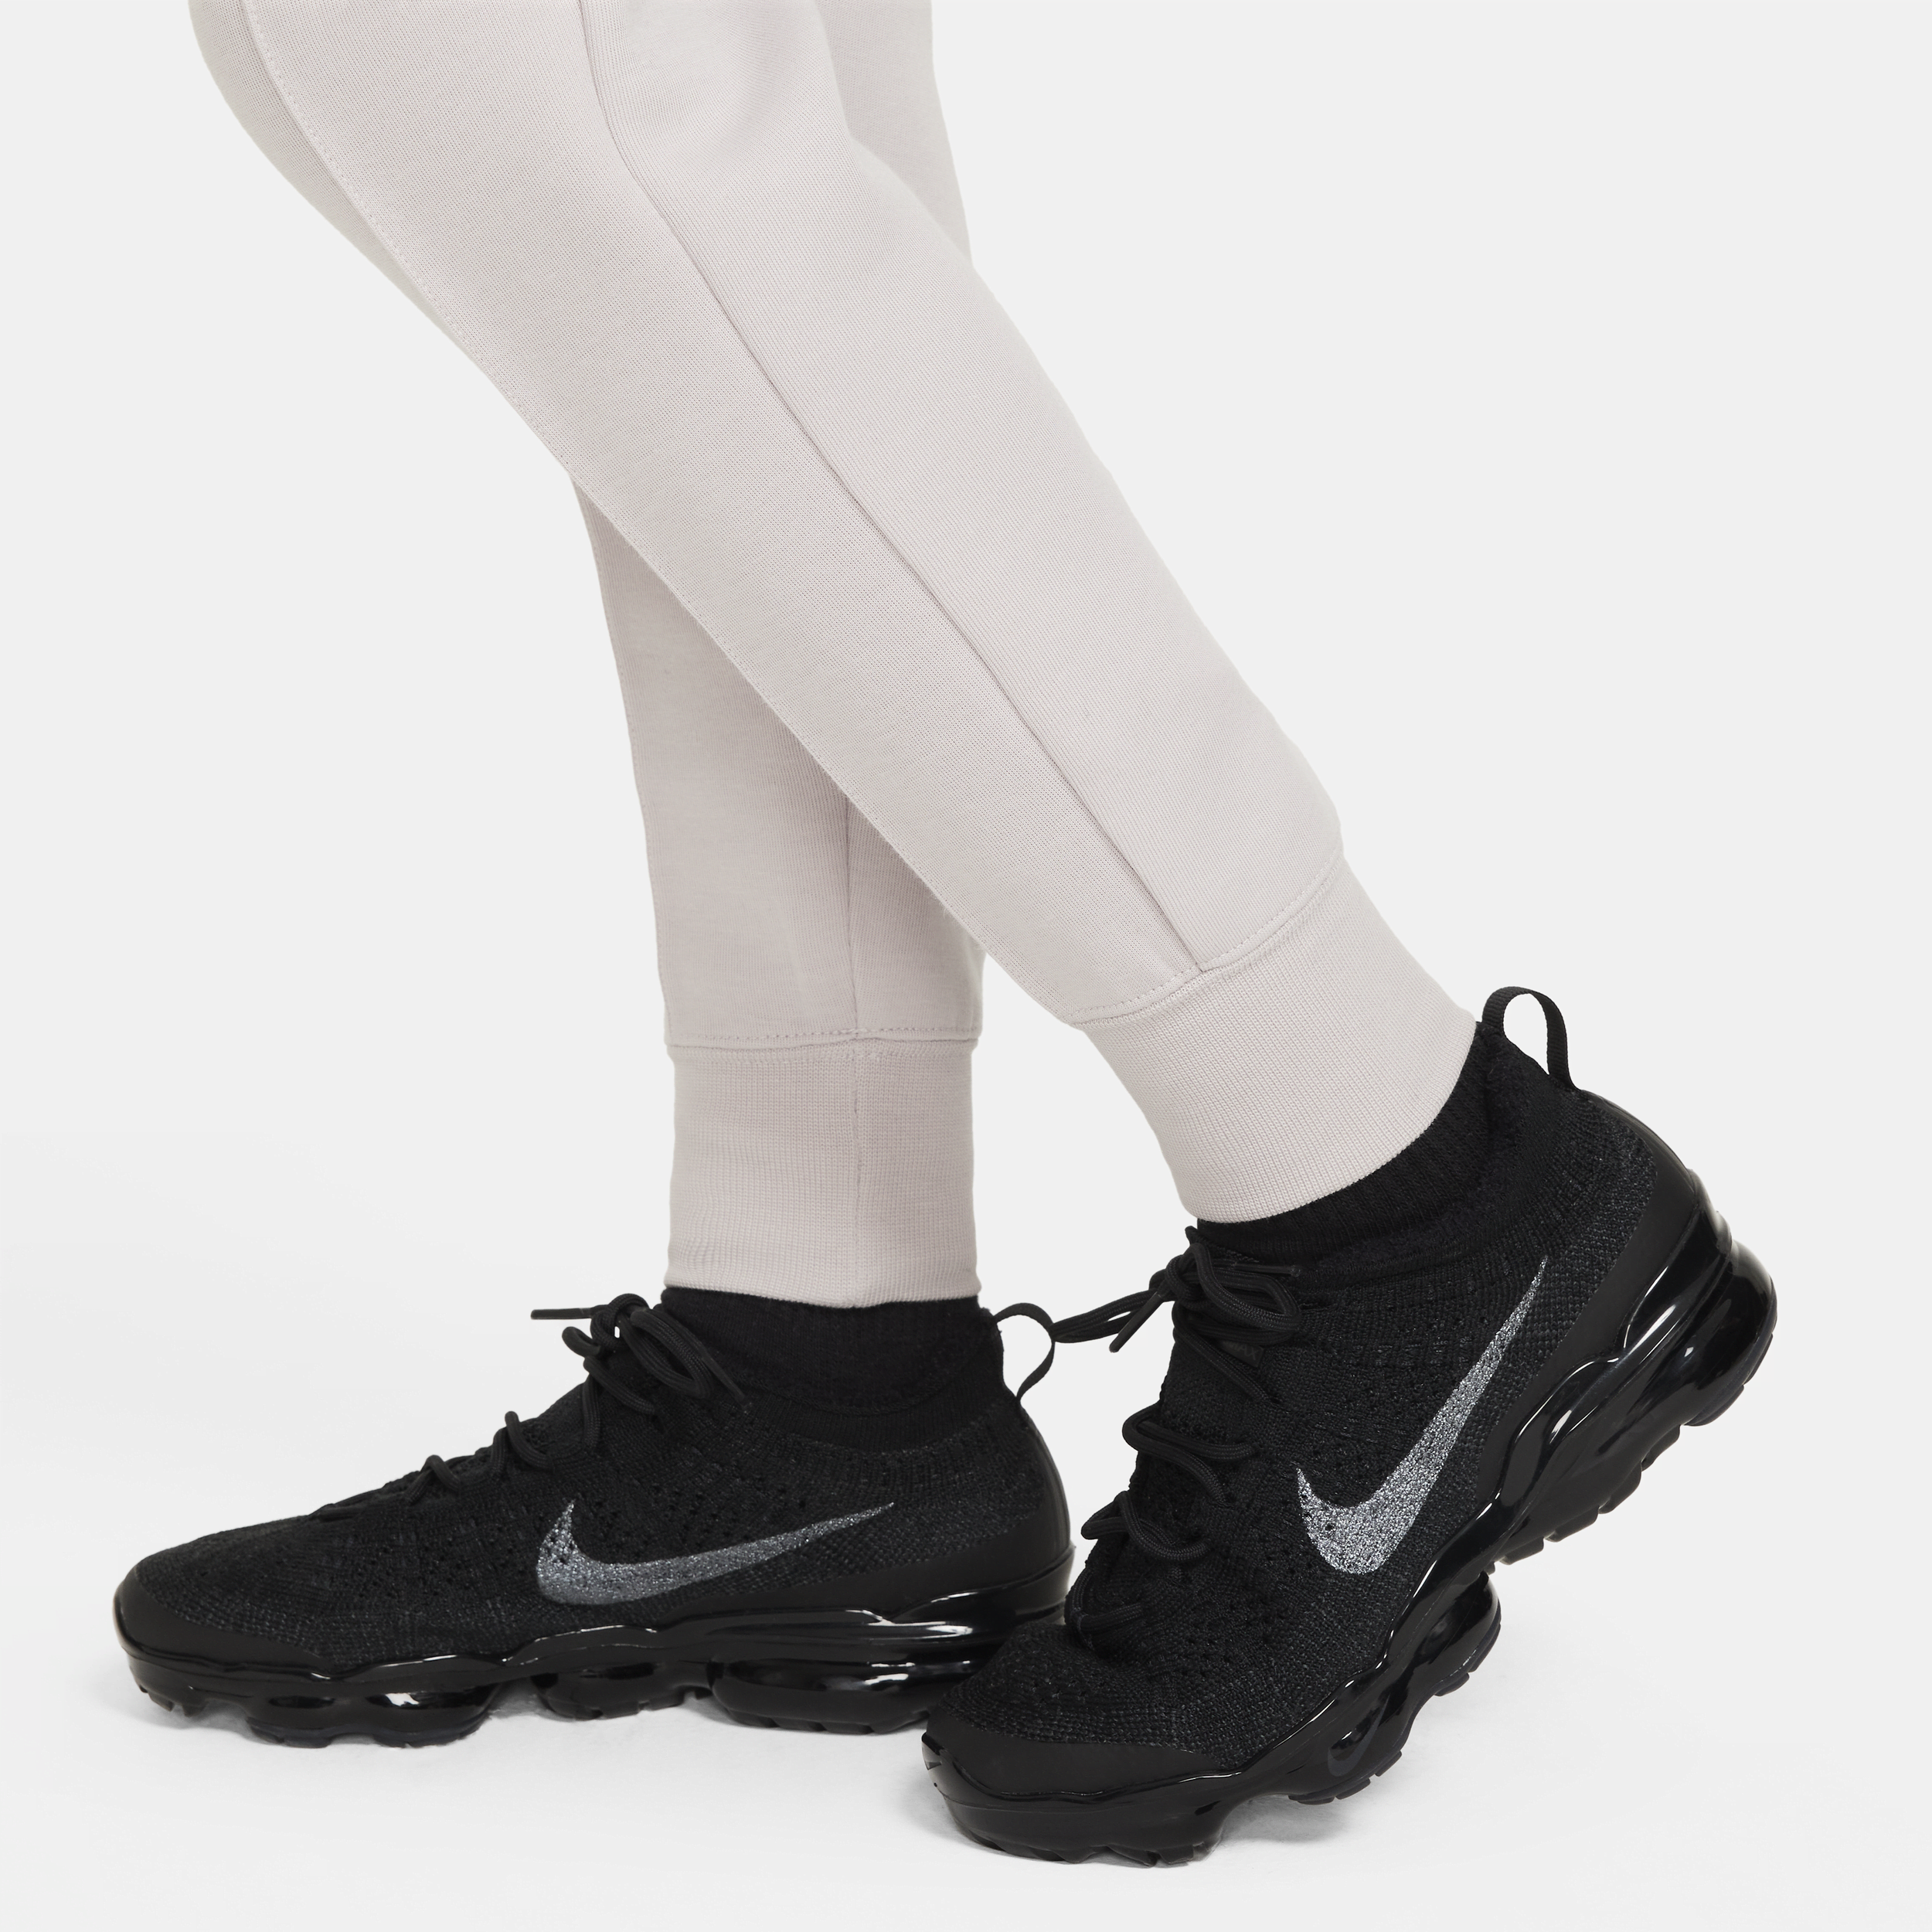 Nike Sportswear Tech Fleece joggingbroek voor meisjes Paars